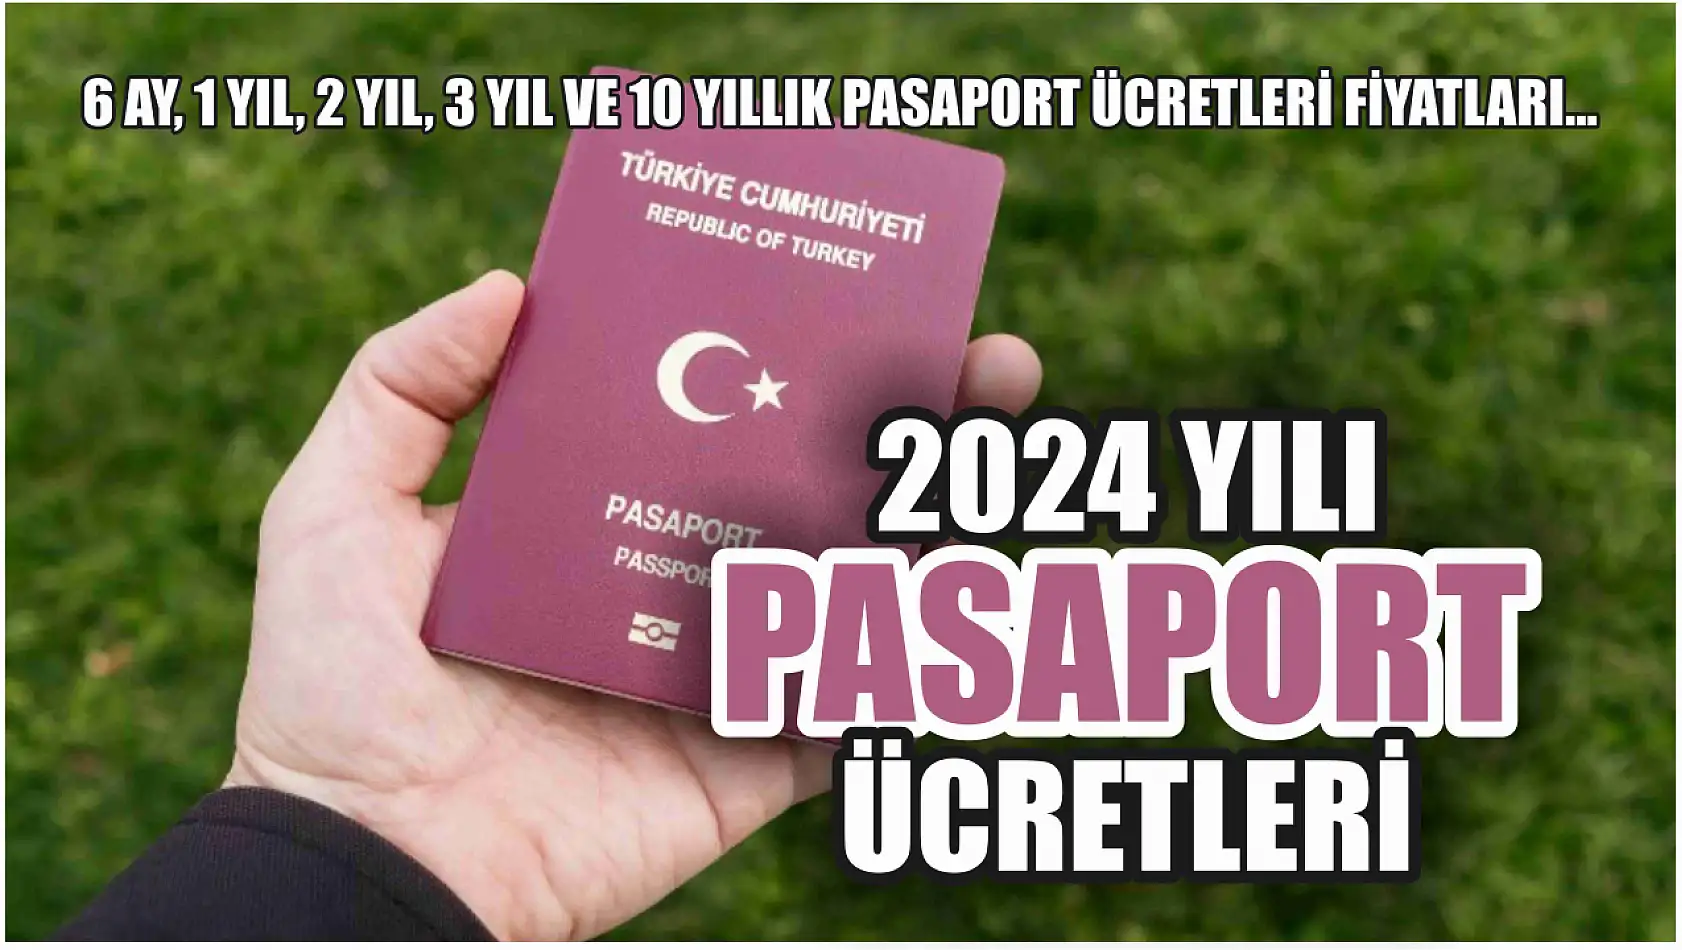 2024 yılı pasaport ücretleri 6 ay, 1 yıl, 2 yıl, 3 yıl ve 10 yıllık pasaport ücretleri fiyatları…